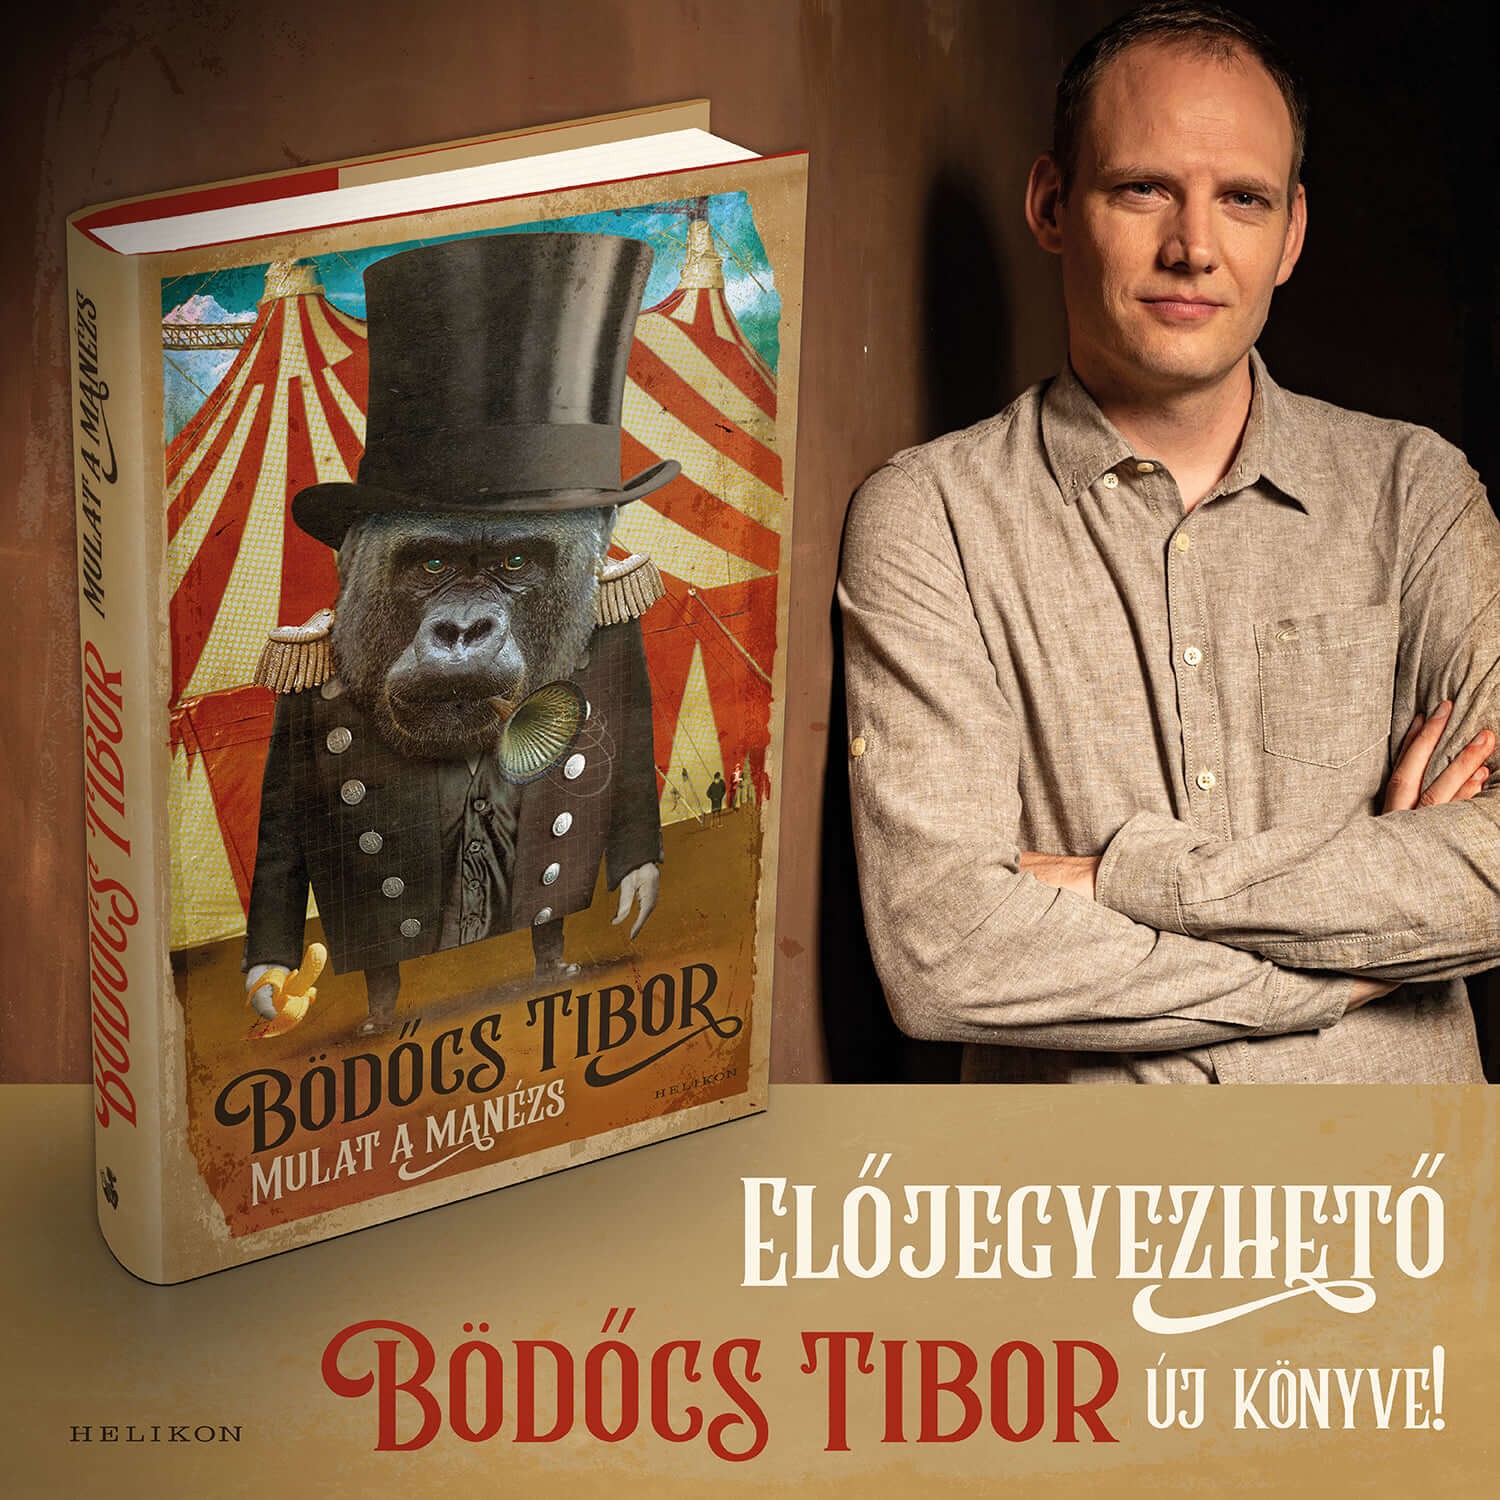 Bödőcs Tibor humorista új könyve: Mulat a manézs